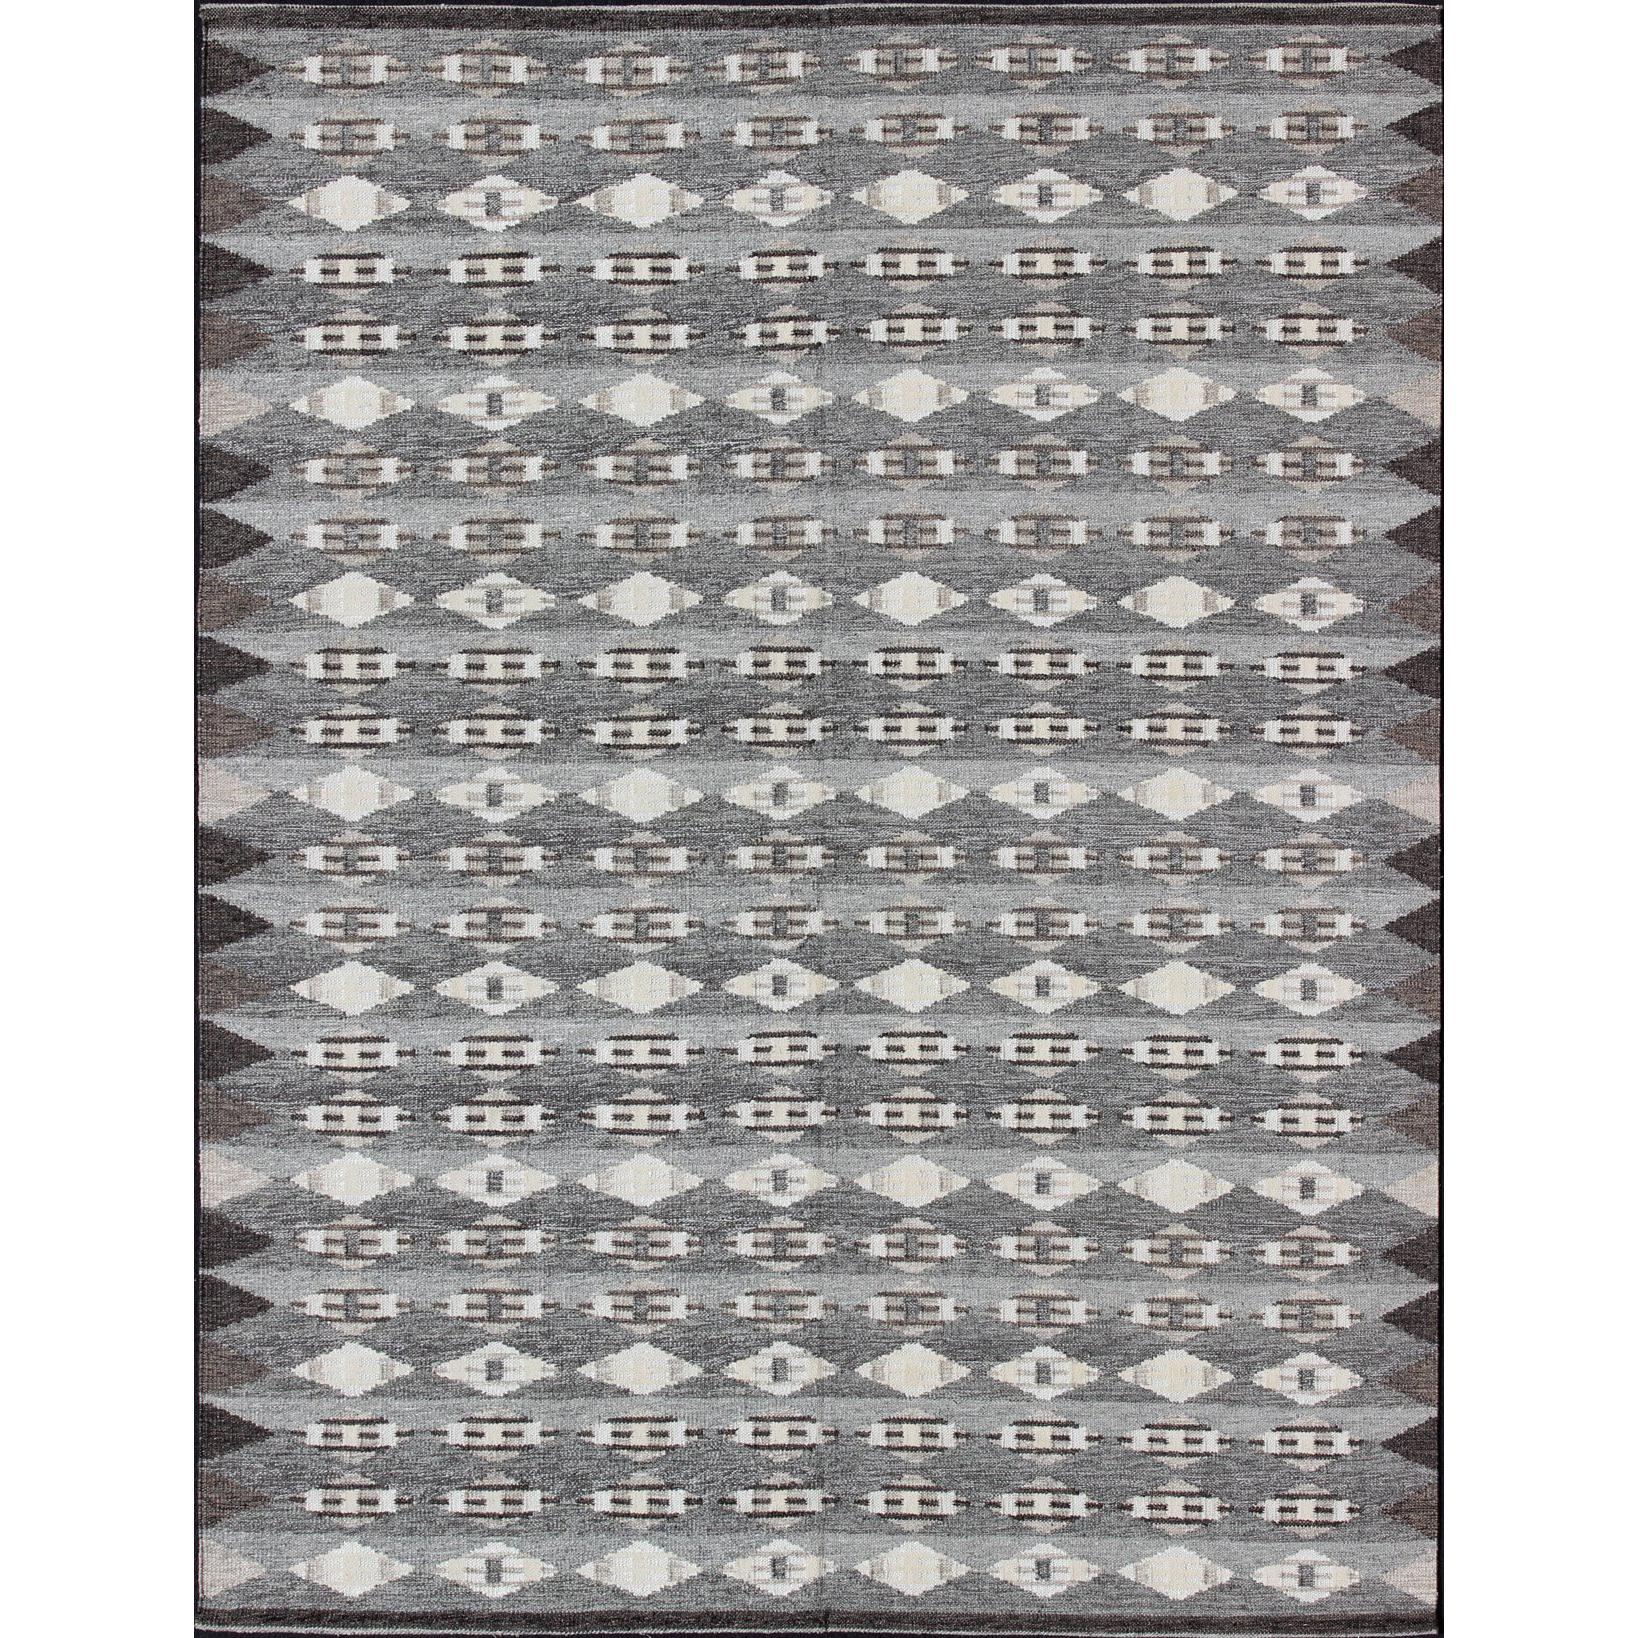 Großer moderner skandinavisch/schwedischer Teppich in Grau und Braun mit geometrischem Design 